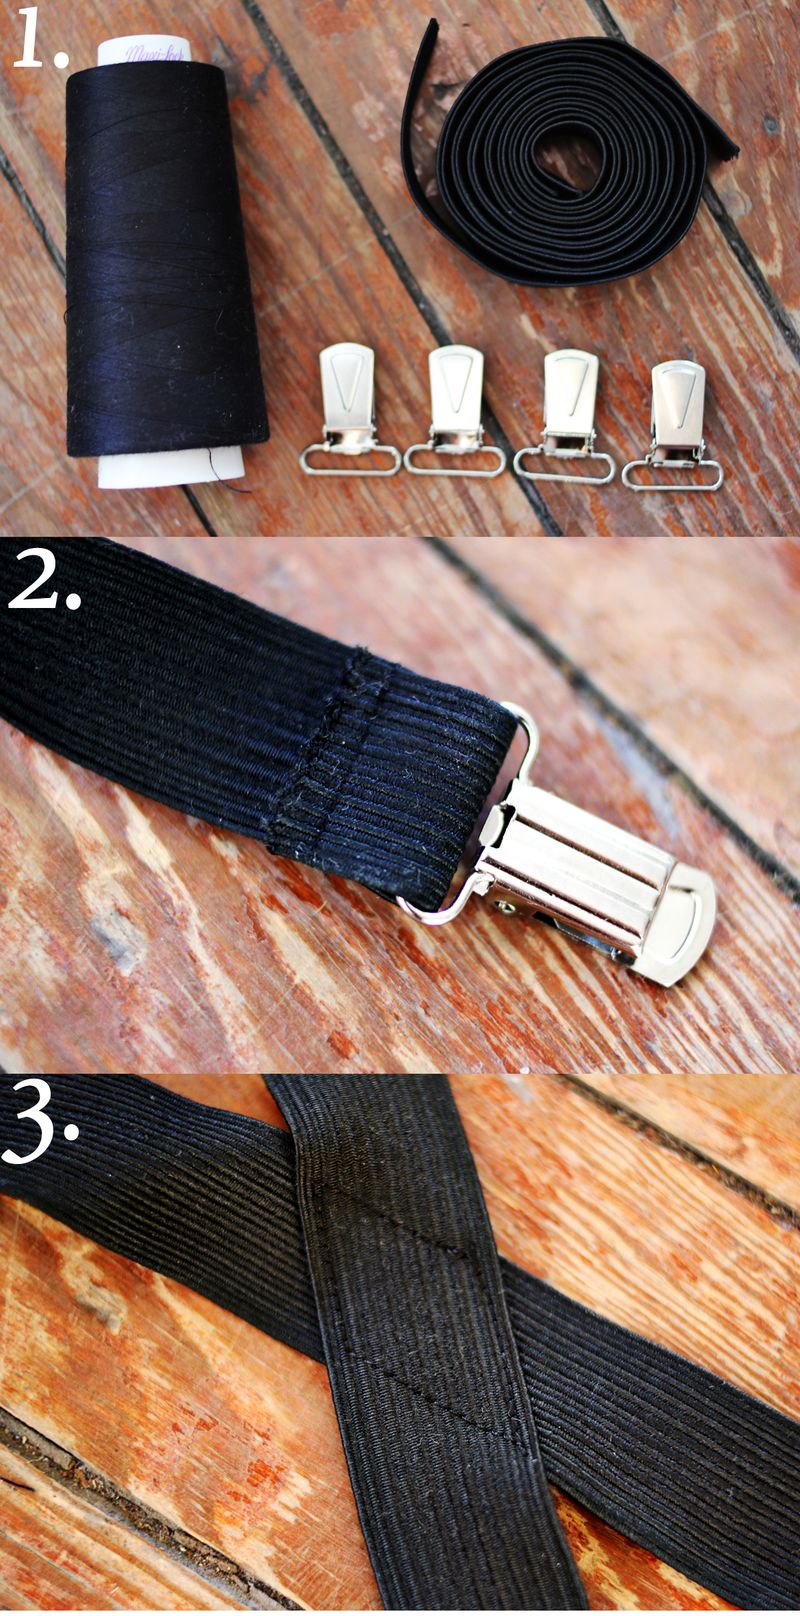 Suspenders steps